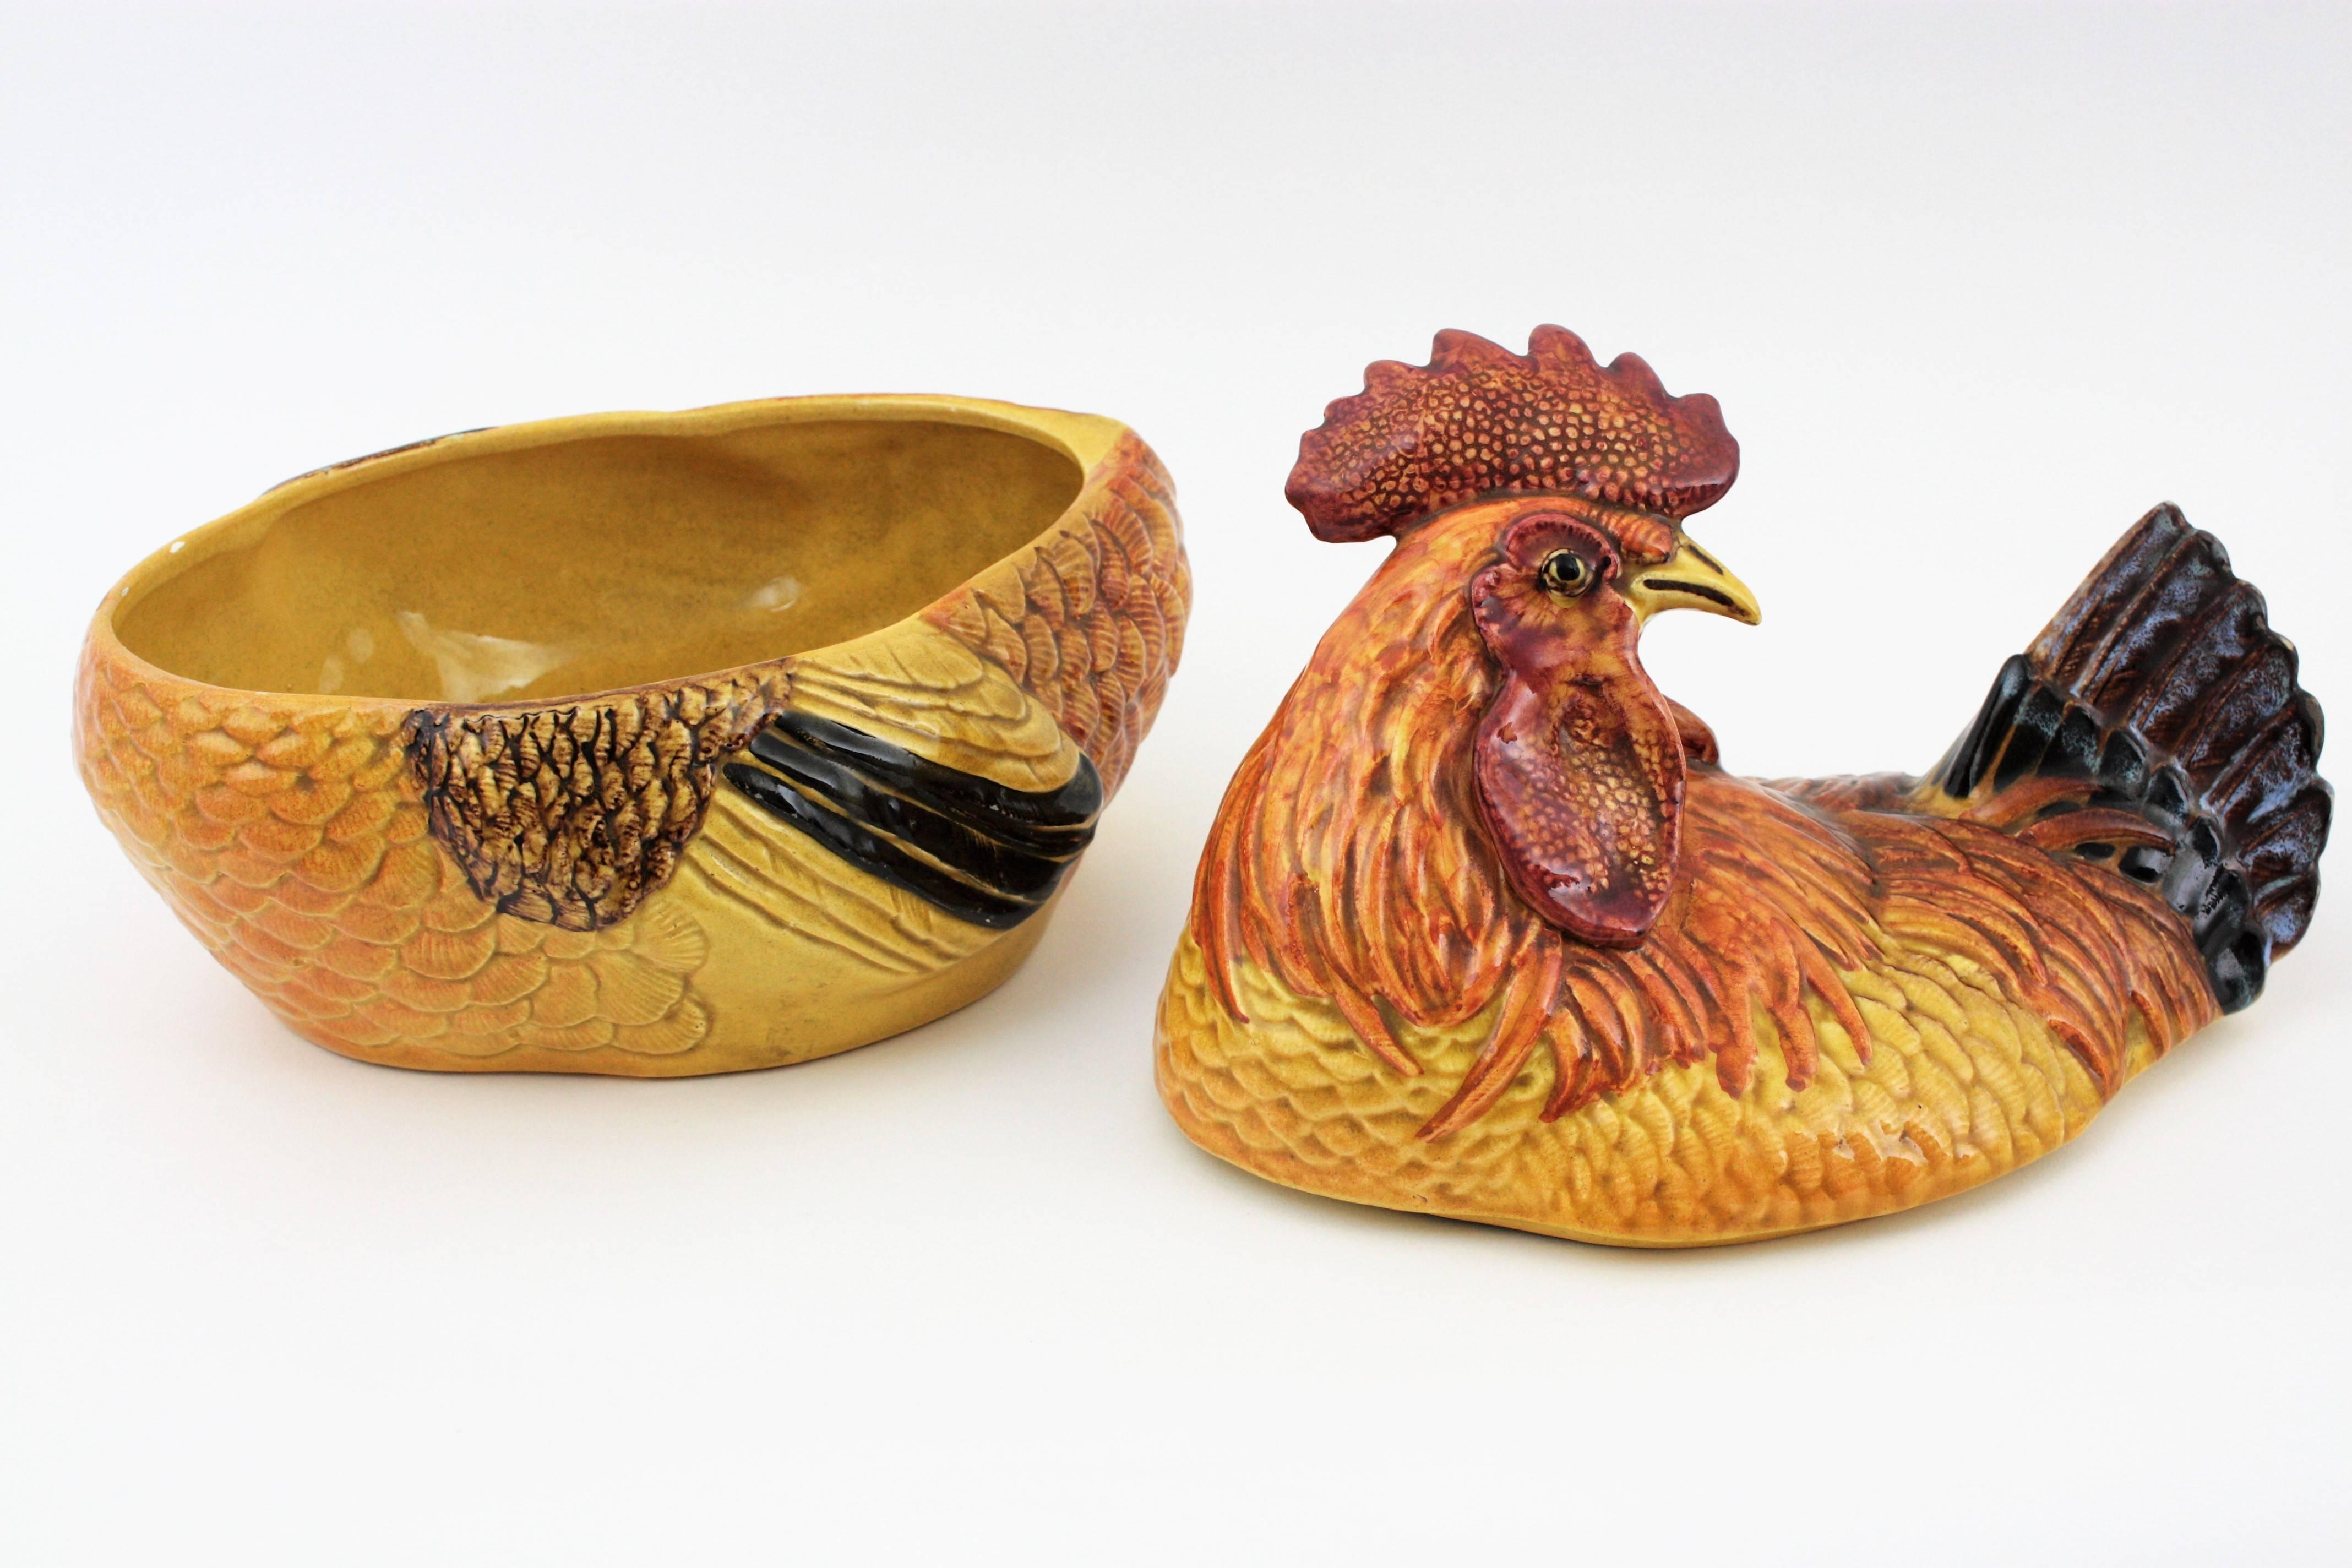 Auffällige, farbenfrohe, handbemalte, glasierte Keramik-Terrine in Form eines Hahns. Italien, 1950er Jahre.
Die größte Größe bei dieser Art von Terrinen oder Eierbehältern. 
Diese erstaunliche und farbenfrohe handbemalte Terrine aus glasierter